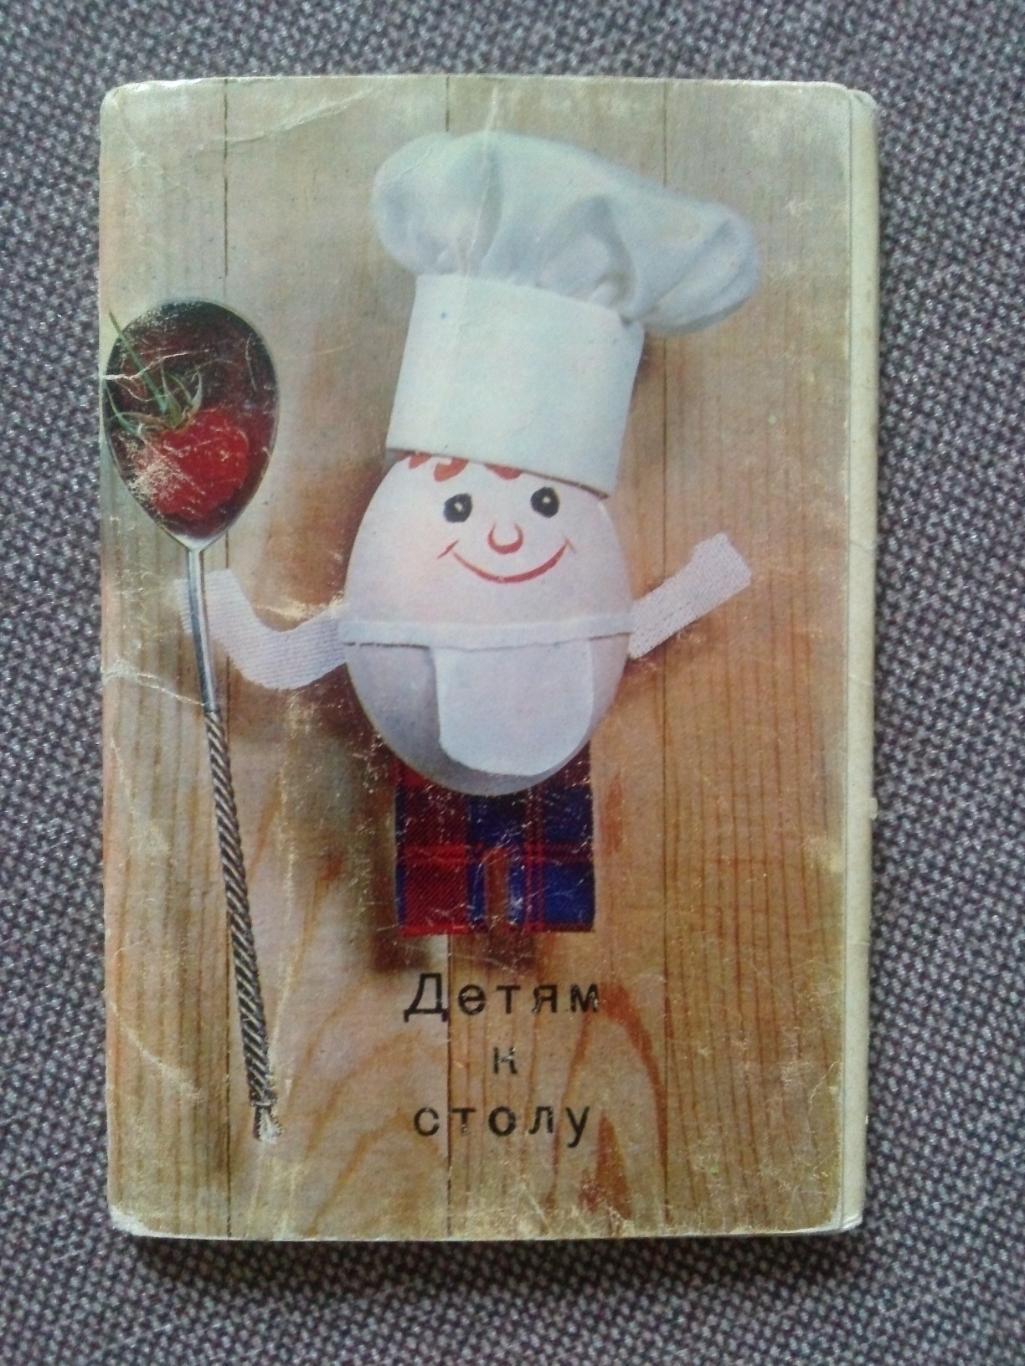 Детям к столу 1972 г. полный набор - 15 открыток (кулинарные рецепты) Кулинария